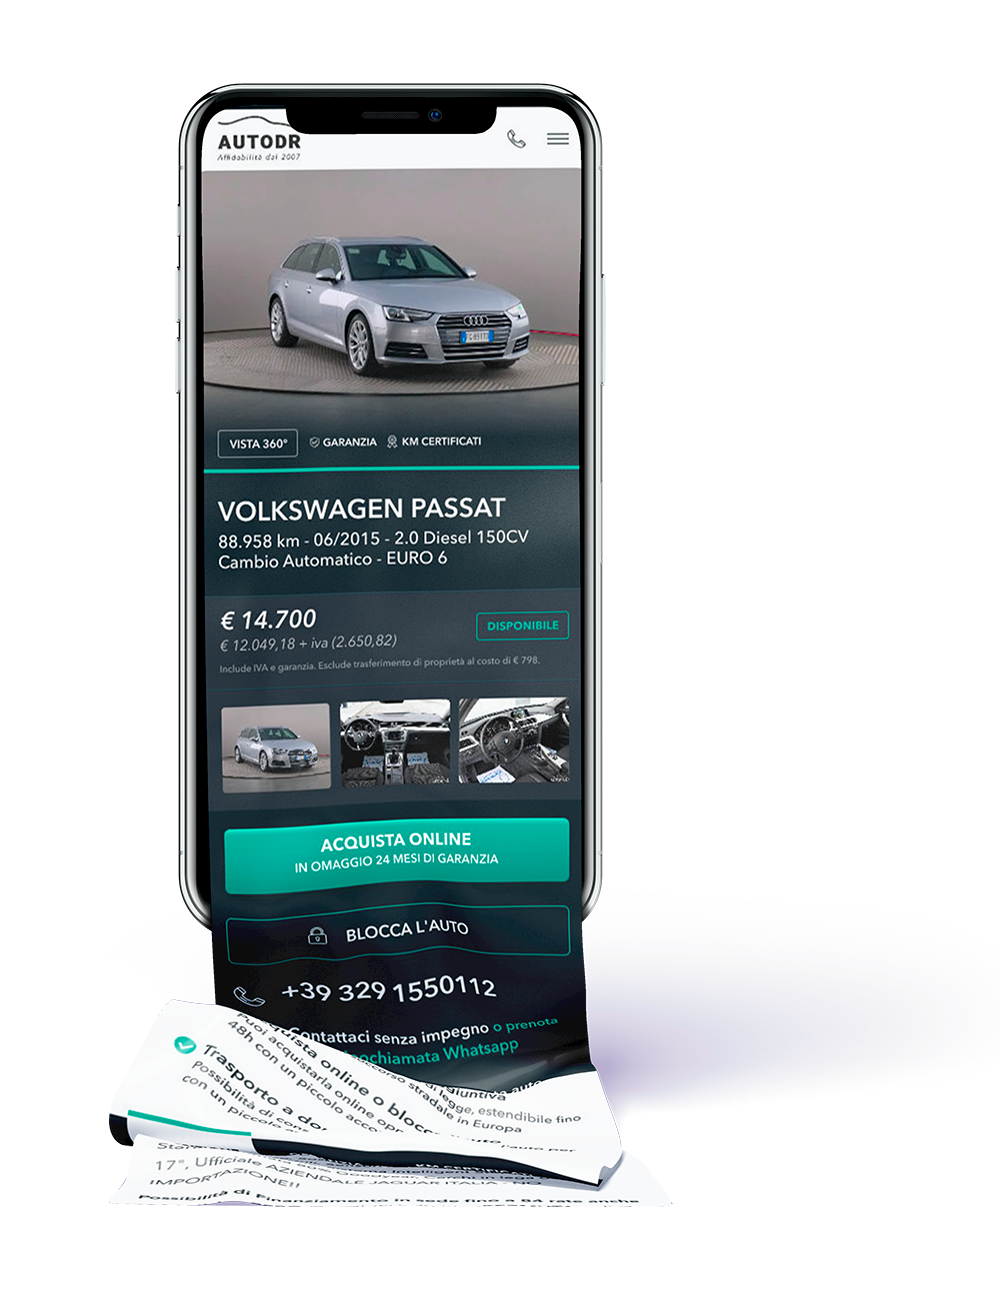 Restyling sito web in Joomla vendita auto